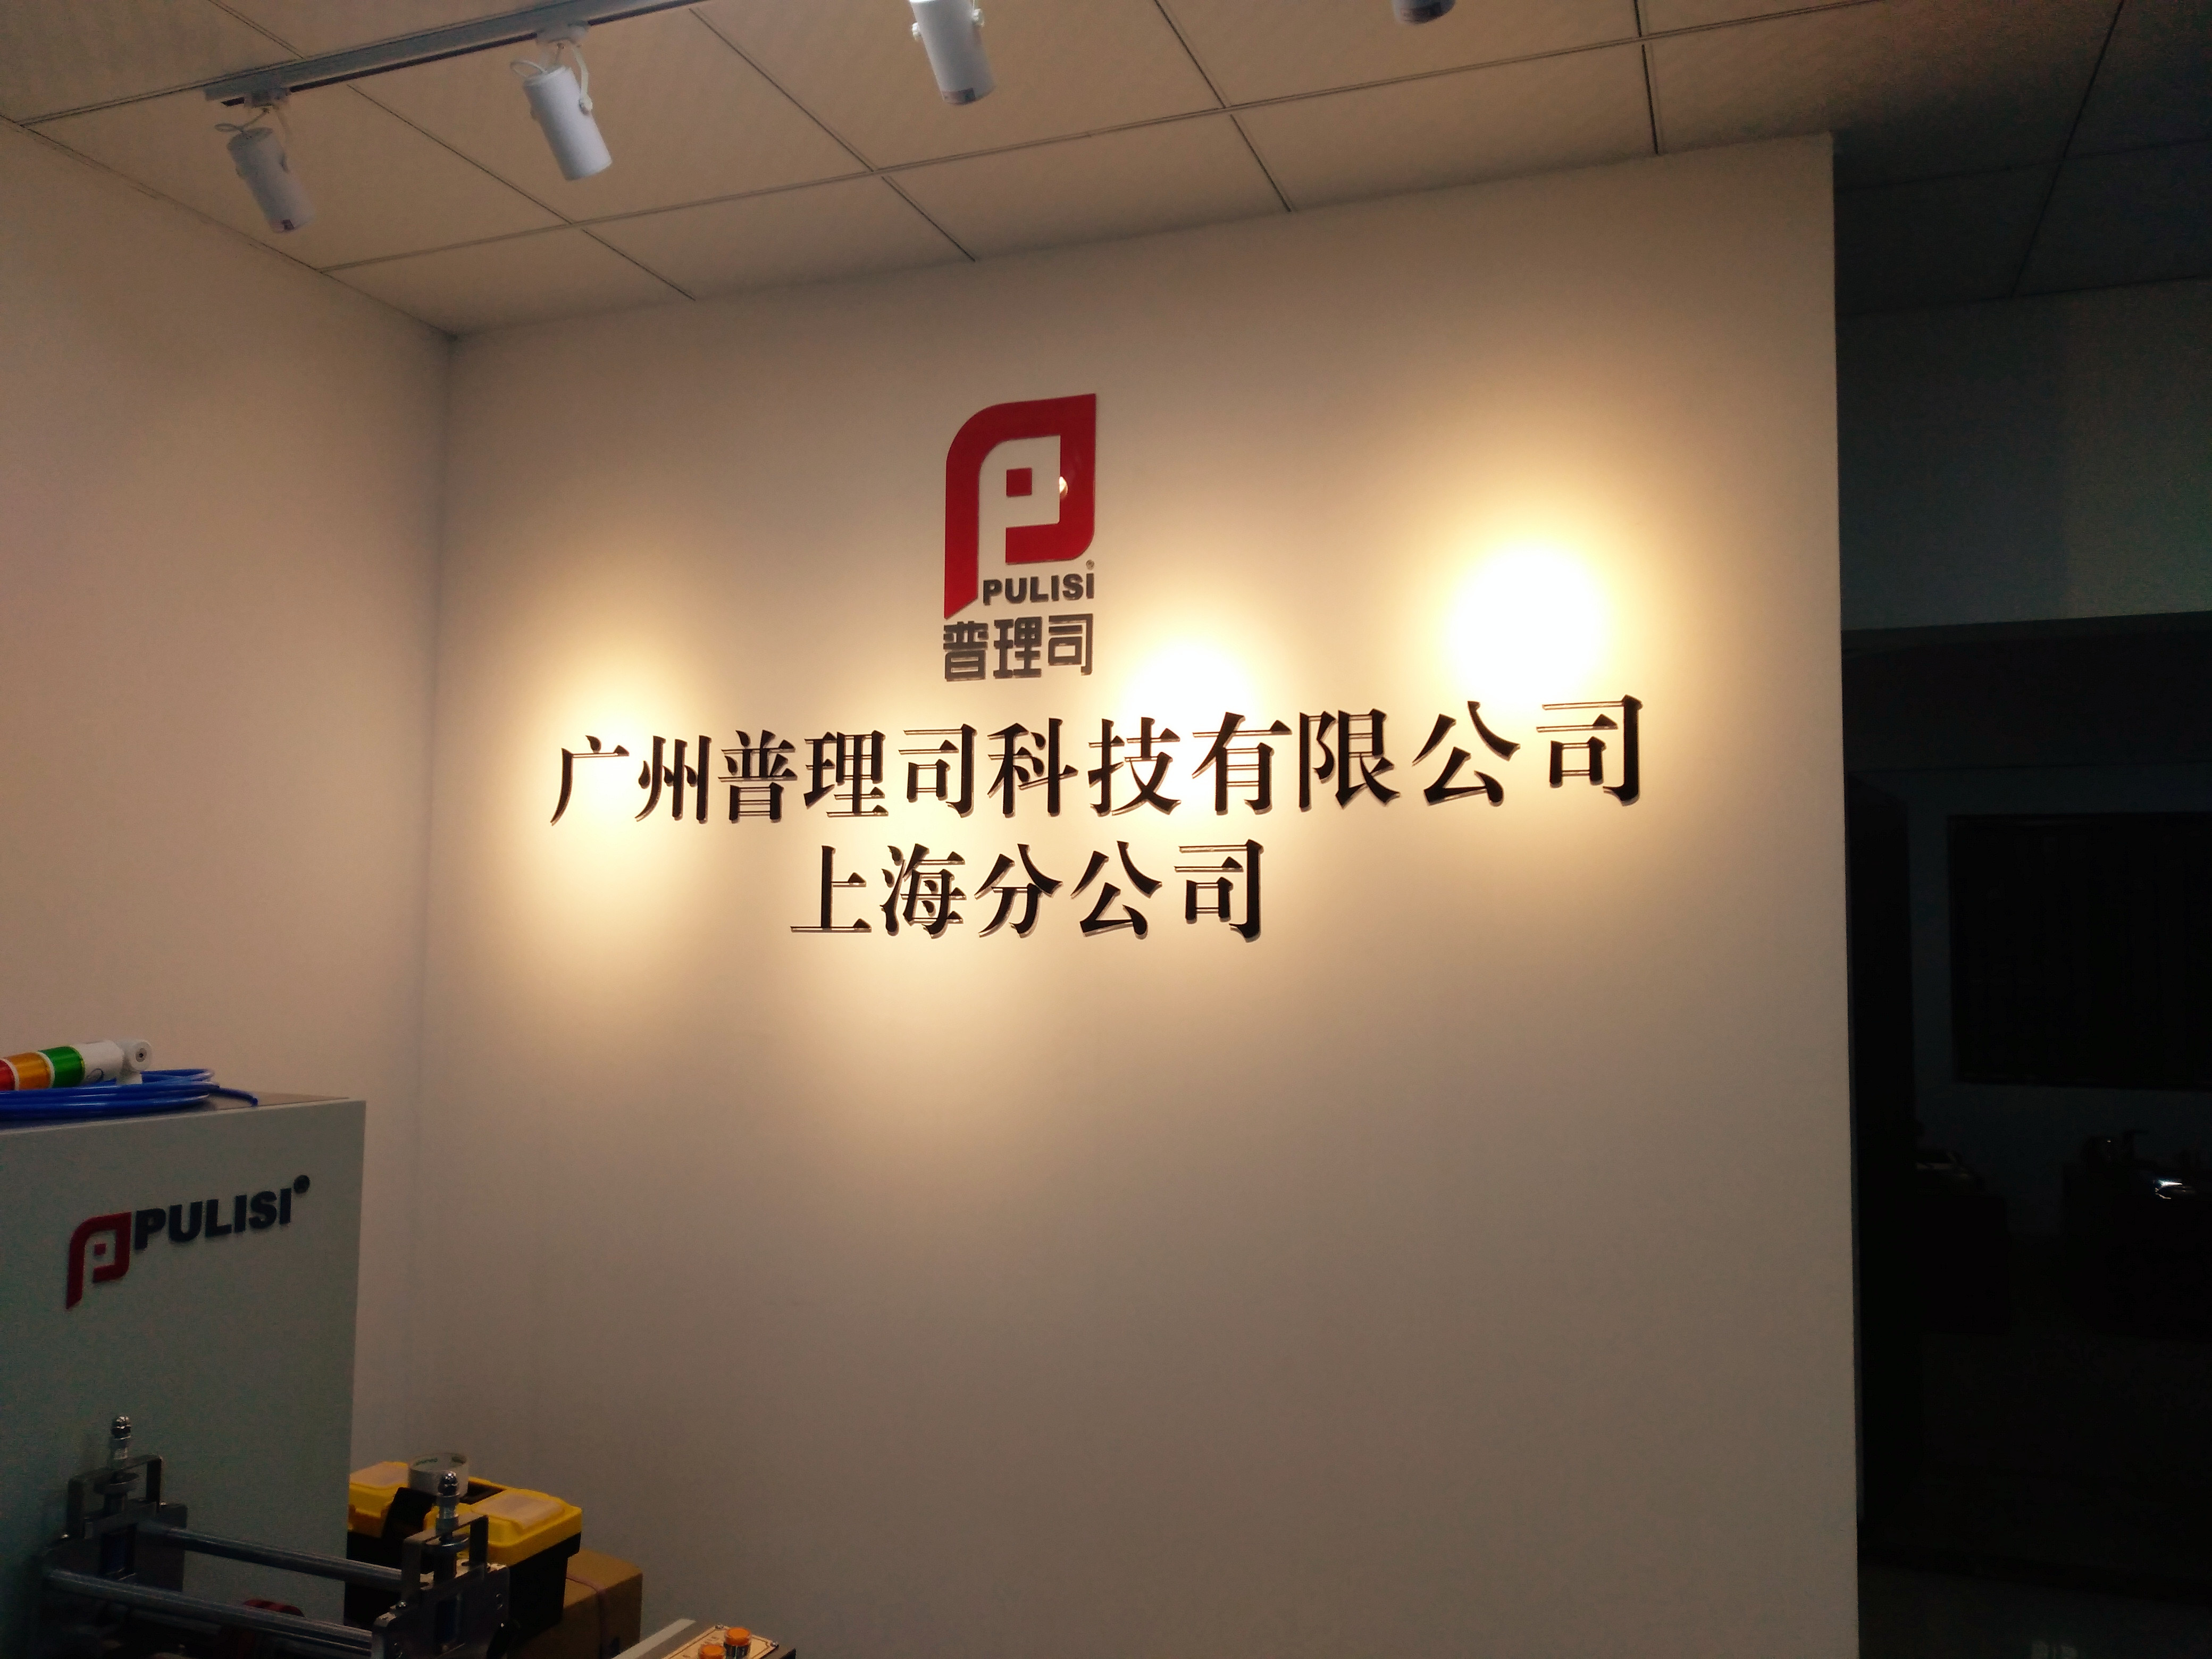 上海公司名称标牌、形象背景墙制作、企业宣传标语、荣誉展示墙图片